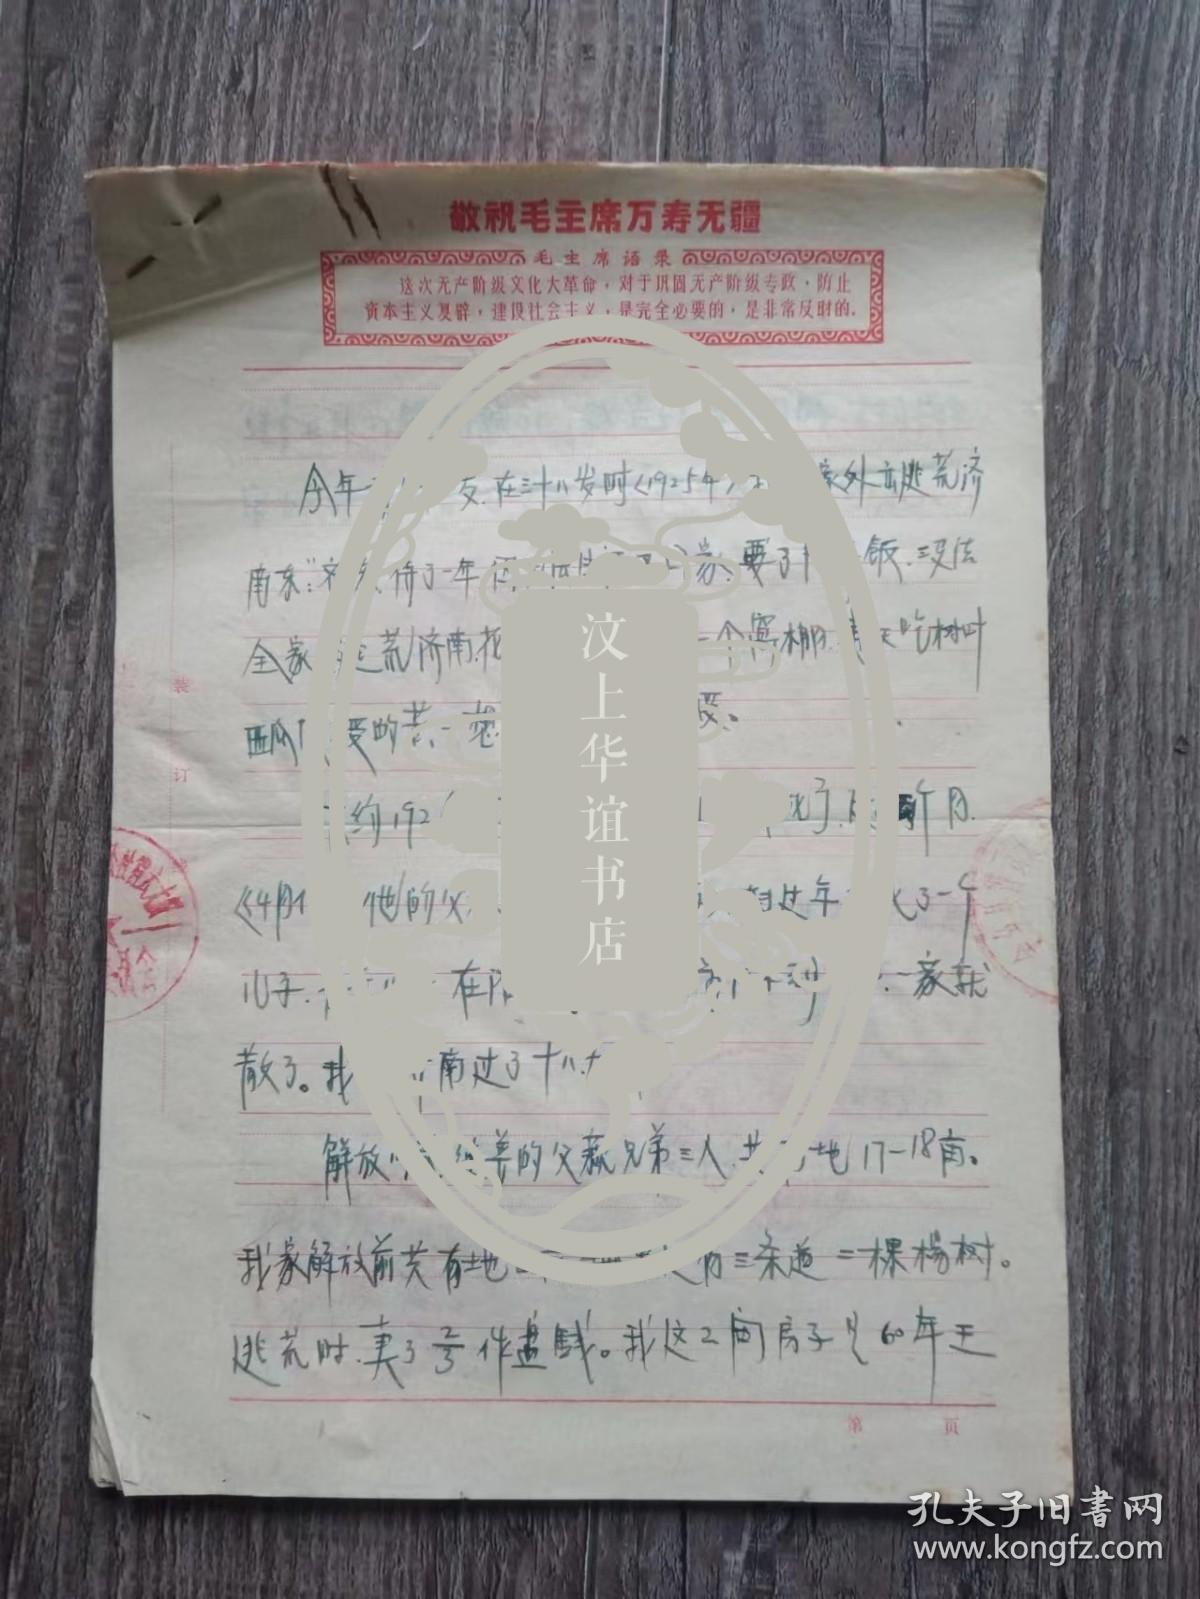 1970年金乡县肖云大队 王马氏家史 及证明材料2份   四清诉苦记录，